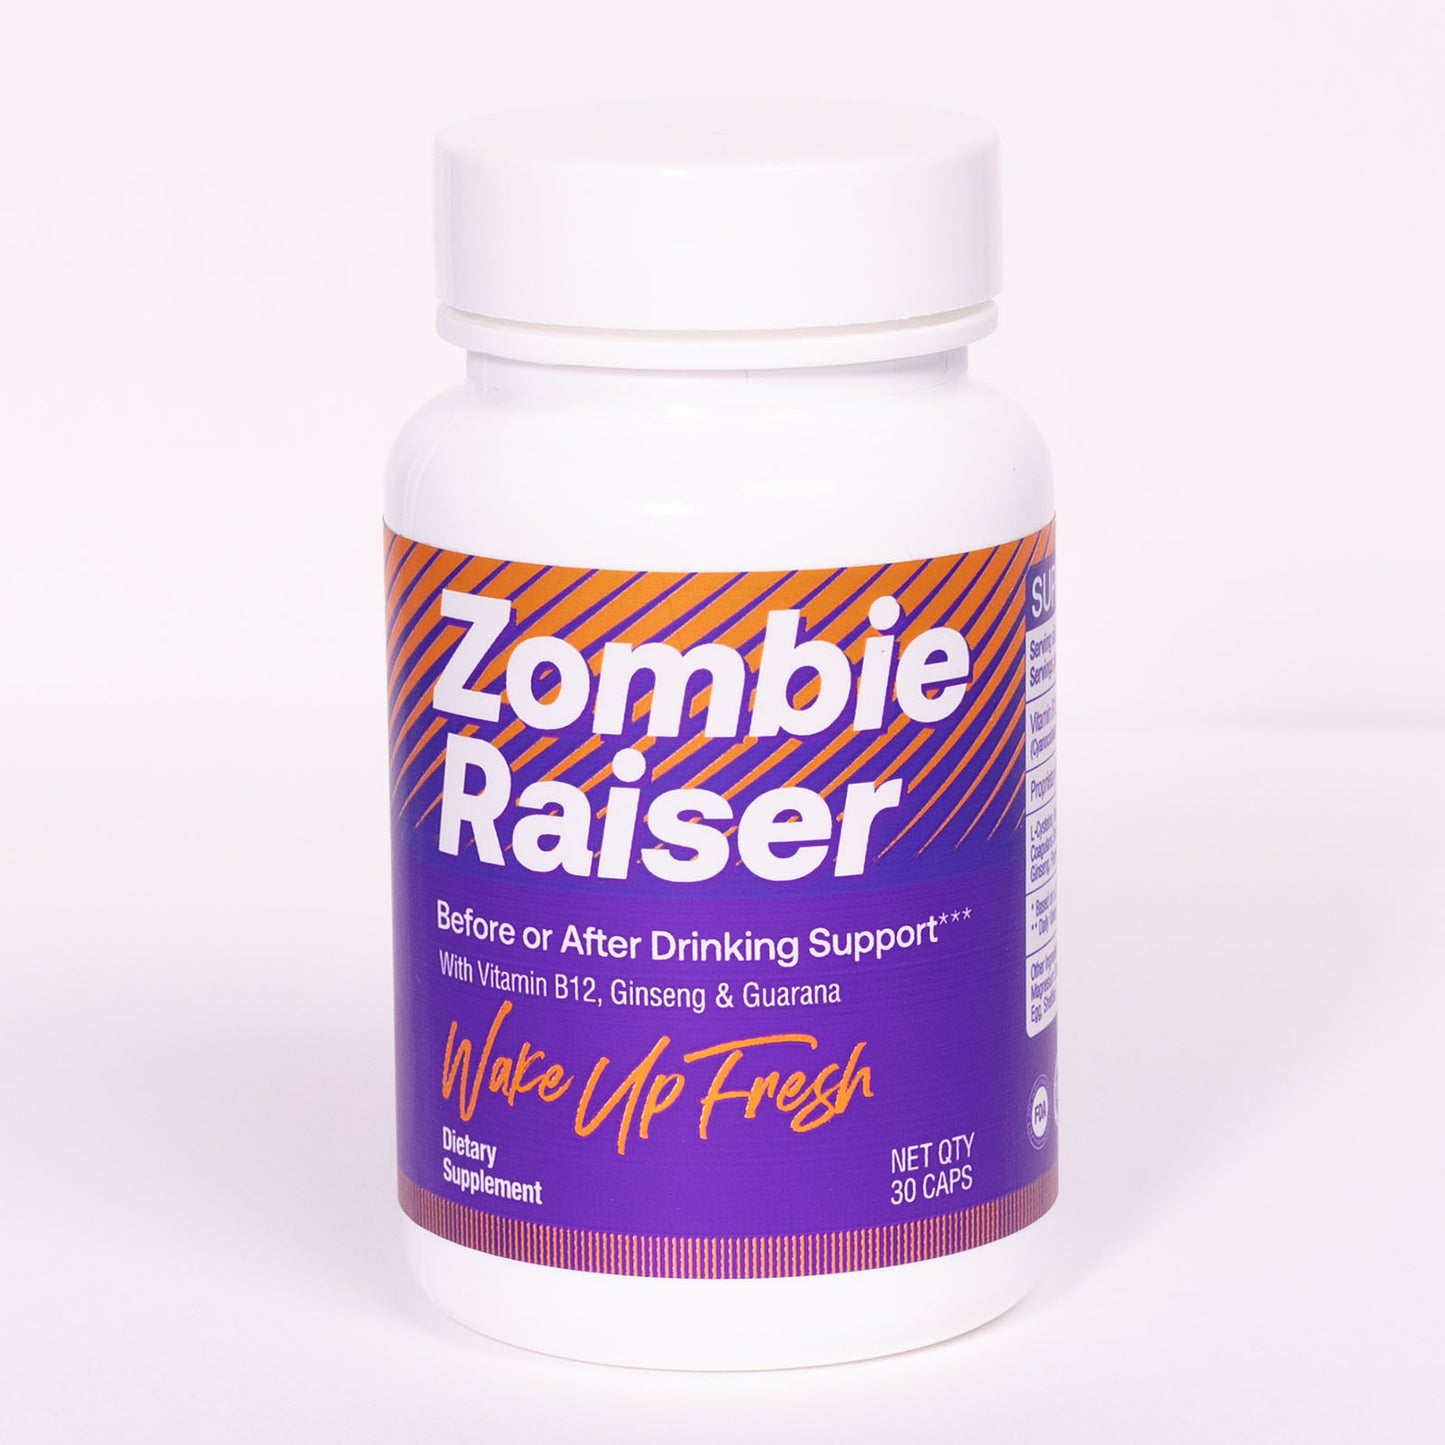 Zombie Raiser